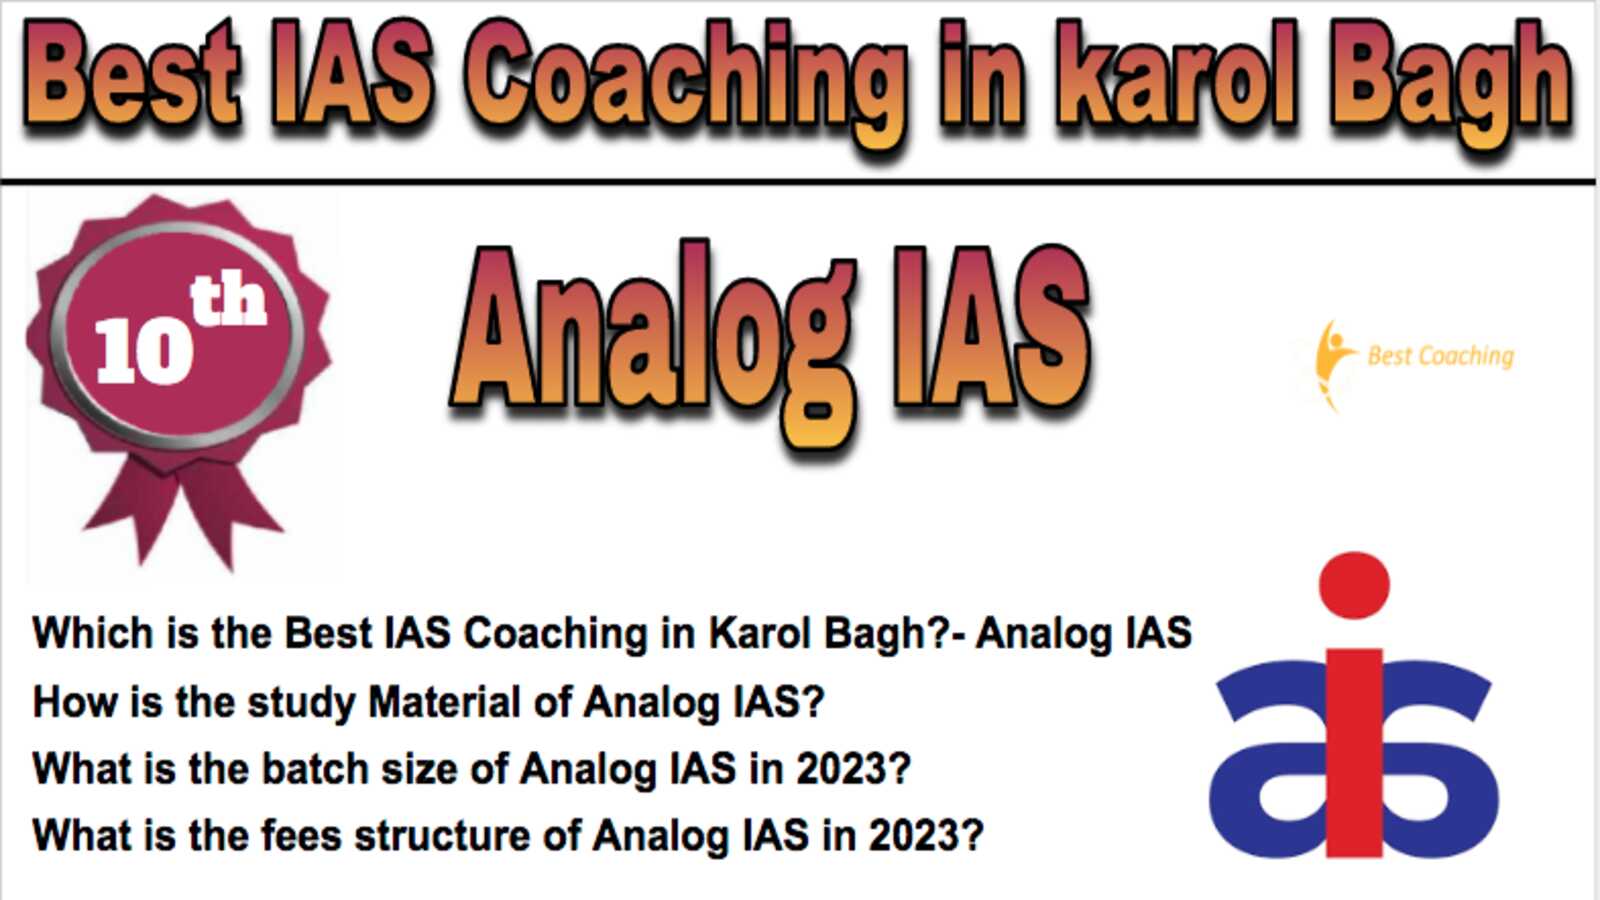 10th Best IAS Coaching in Karol Bagh 2023